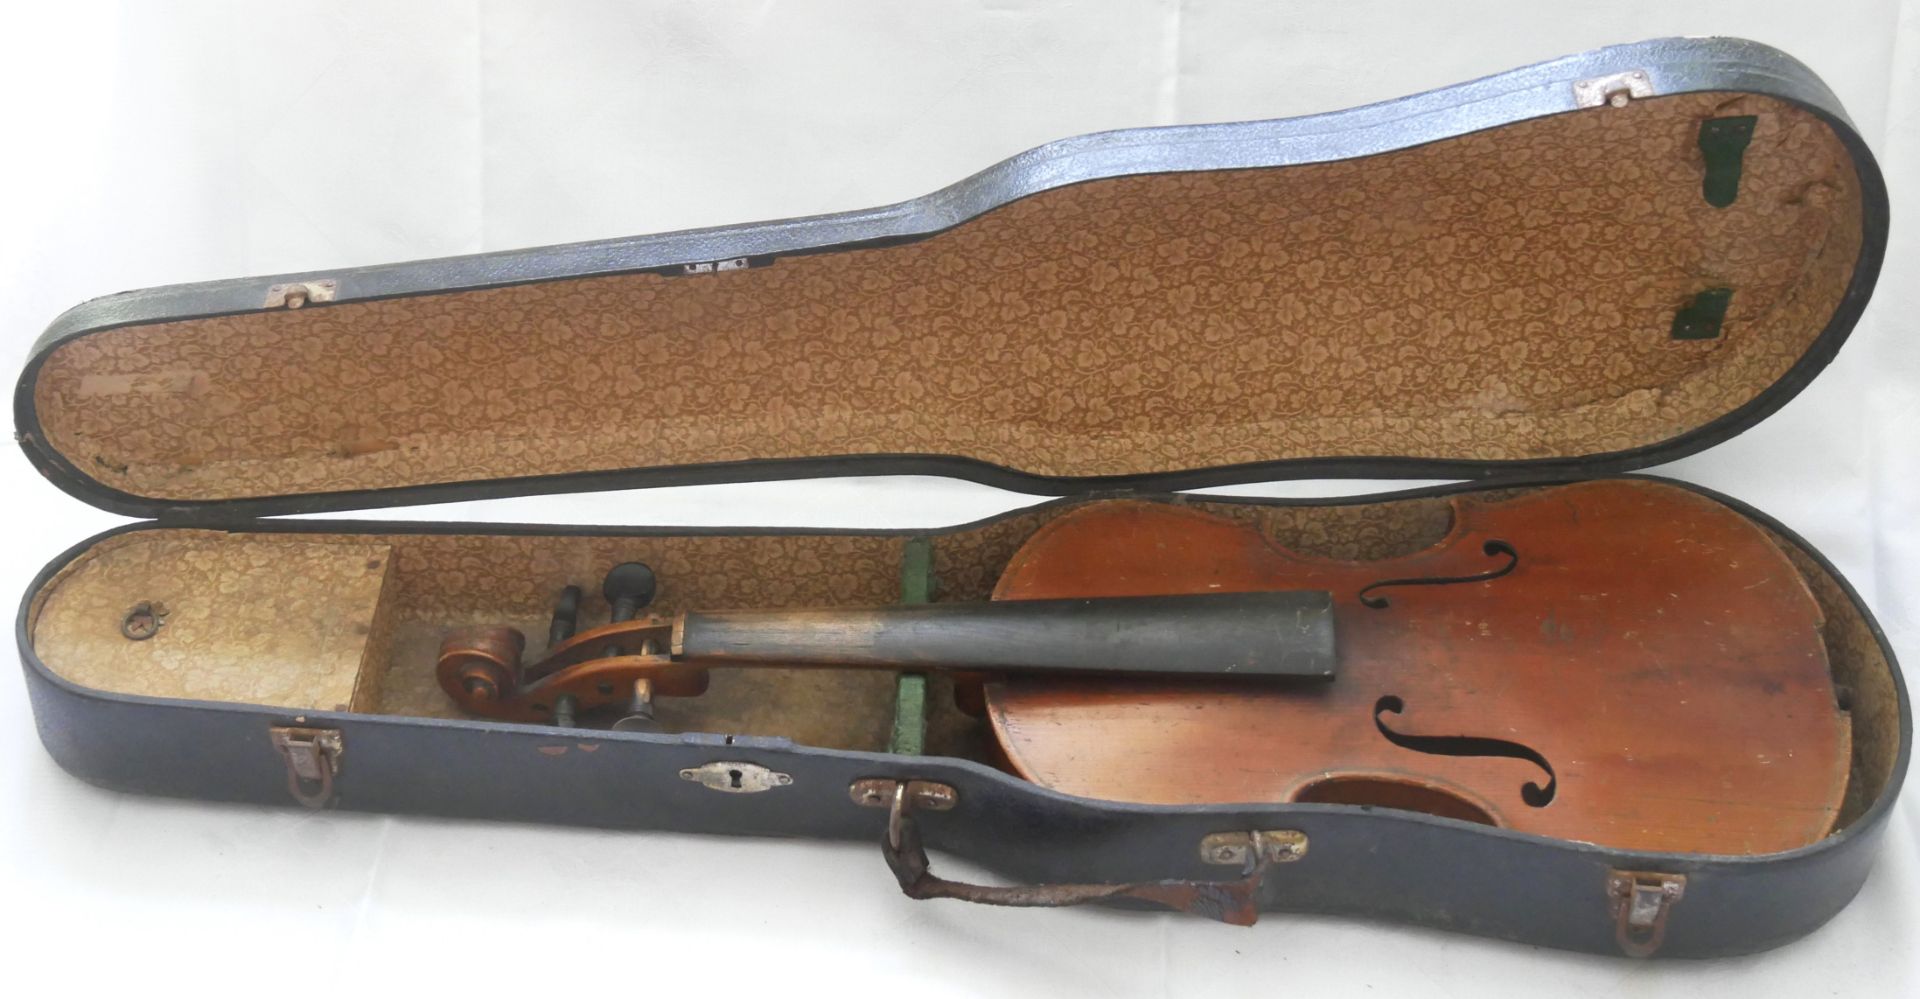 Geige unbekannter Hersteller, starke Gebrauchsspuren zur Restauration, im alten Kasten. Bitte